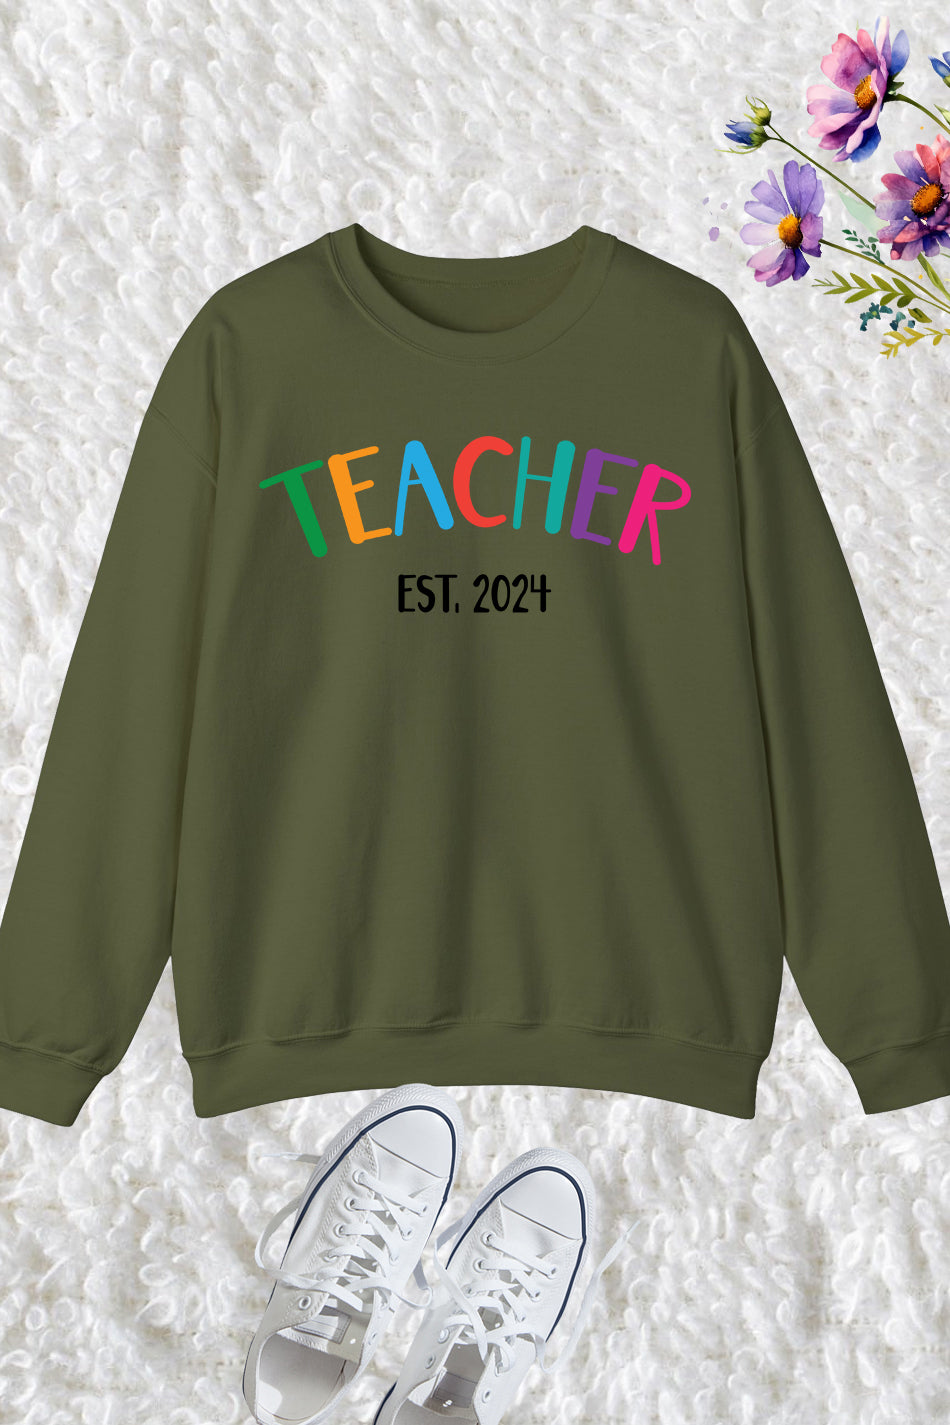 Teacher Est 2024 Sweatshirt New Teacher Gift